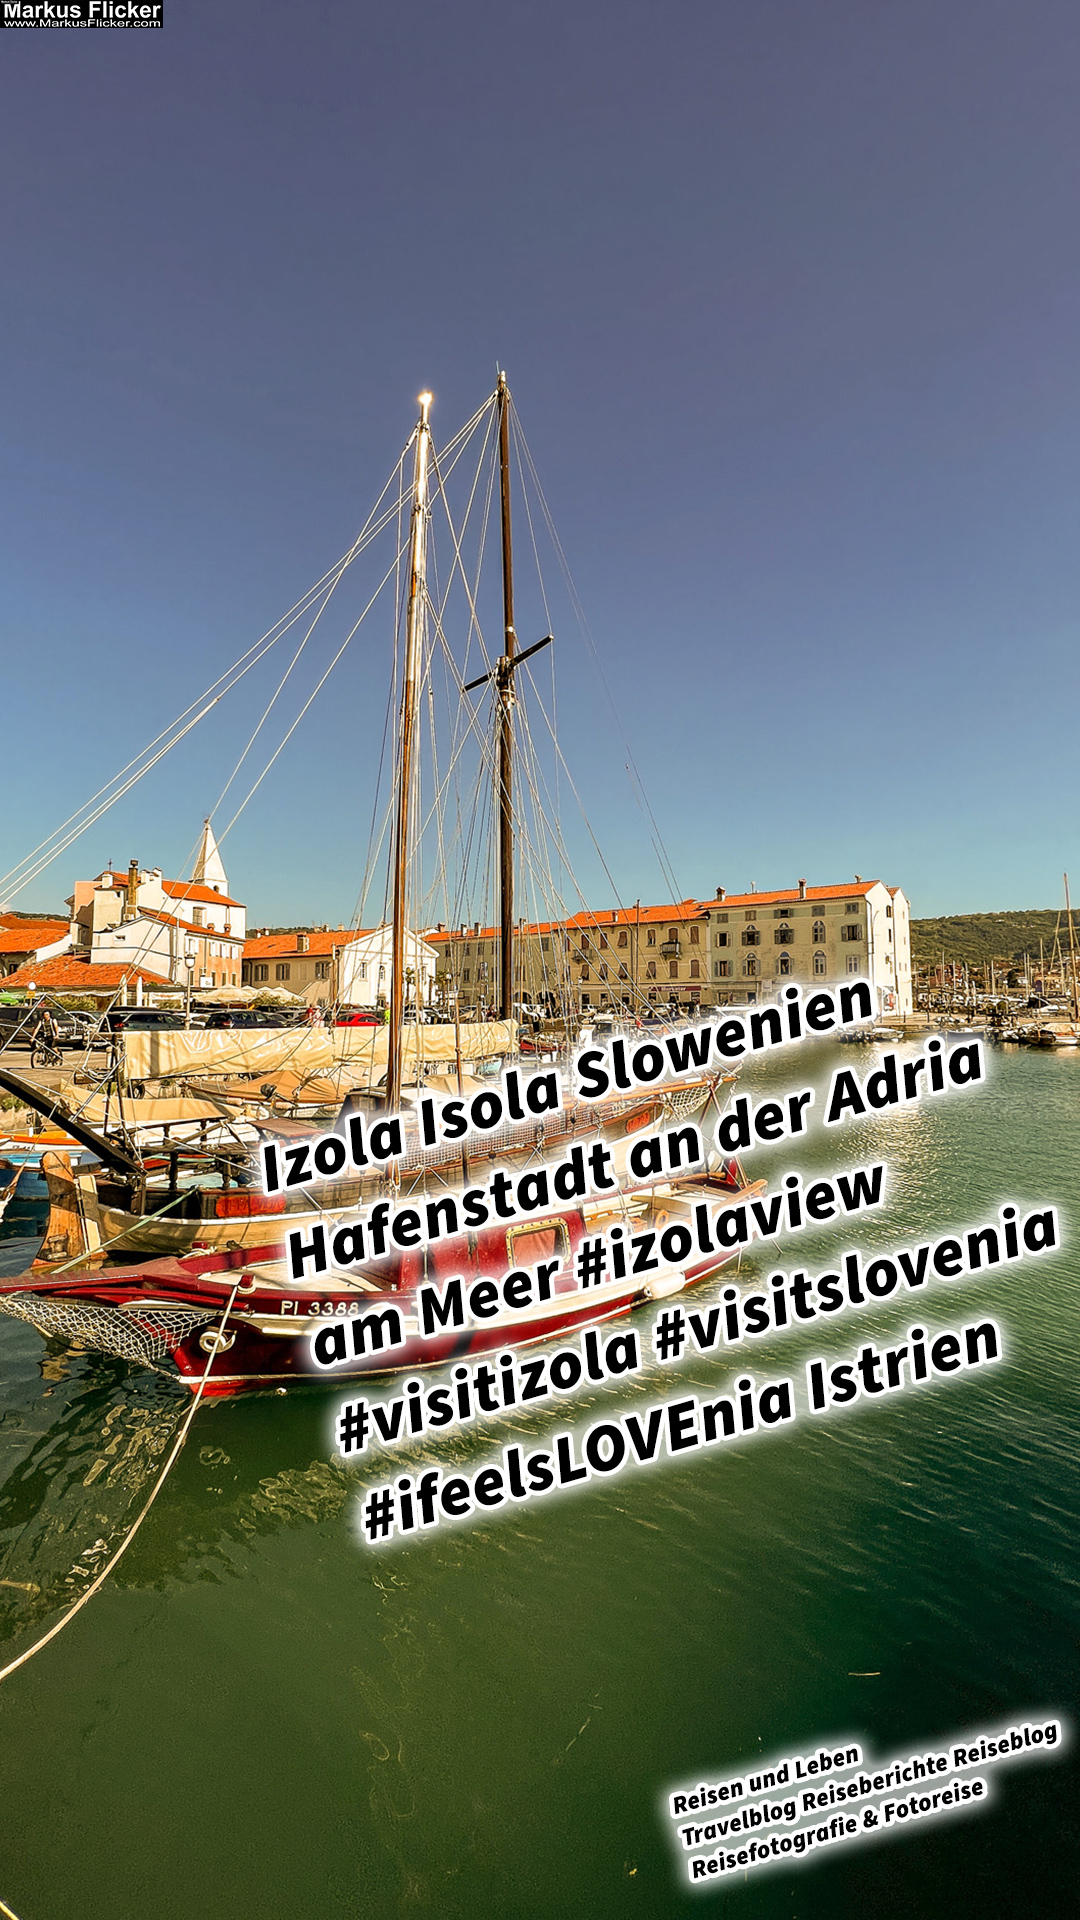 Izola Isola Slowenien Hafenstadt an der Adria am Meer #izolaview #visitizola #visitslovenia #ifeelsLOVEnia Istrien Eine malerische Hafenstadt an der Adriaküste